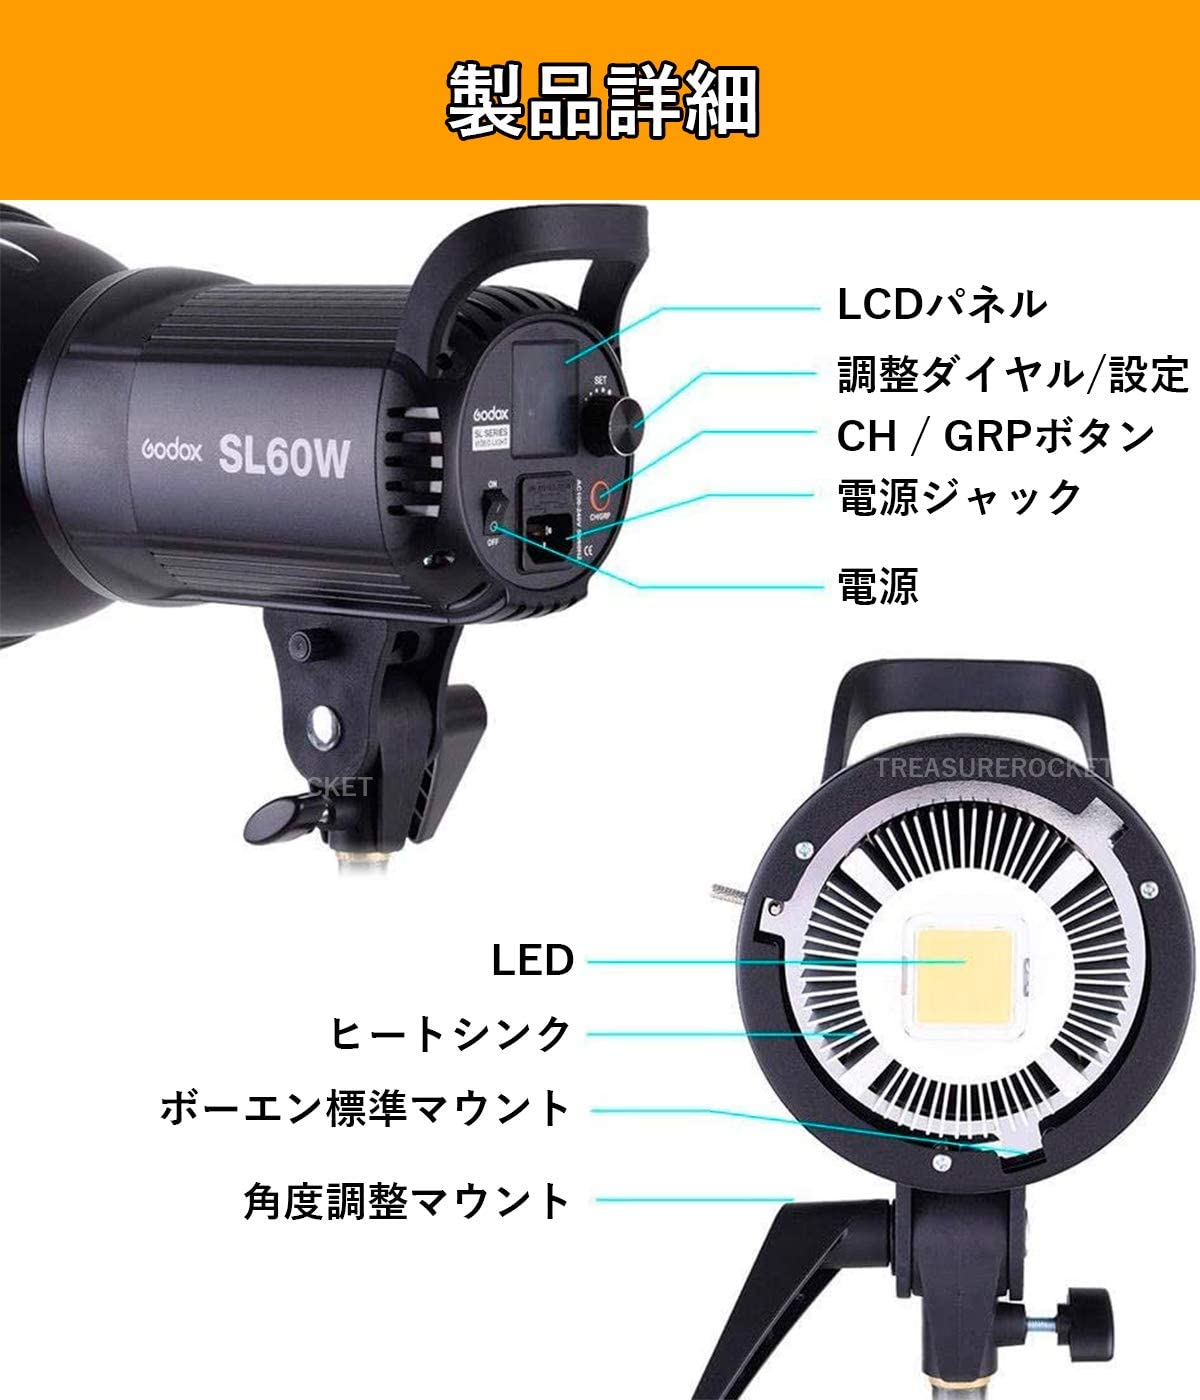 Godox SL60W LEDライト(スタンド無し)[ボーエンズマウント] | パンダ